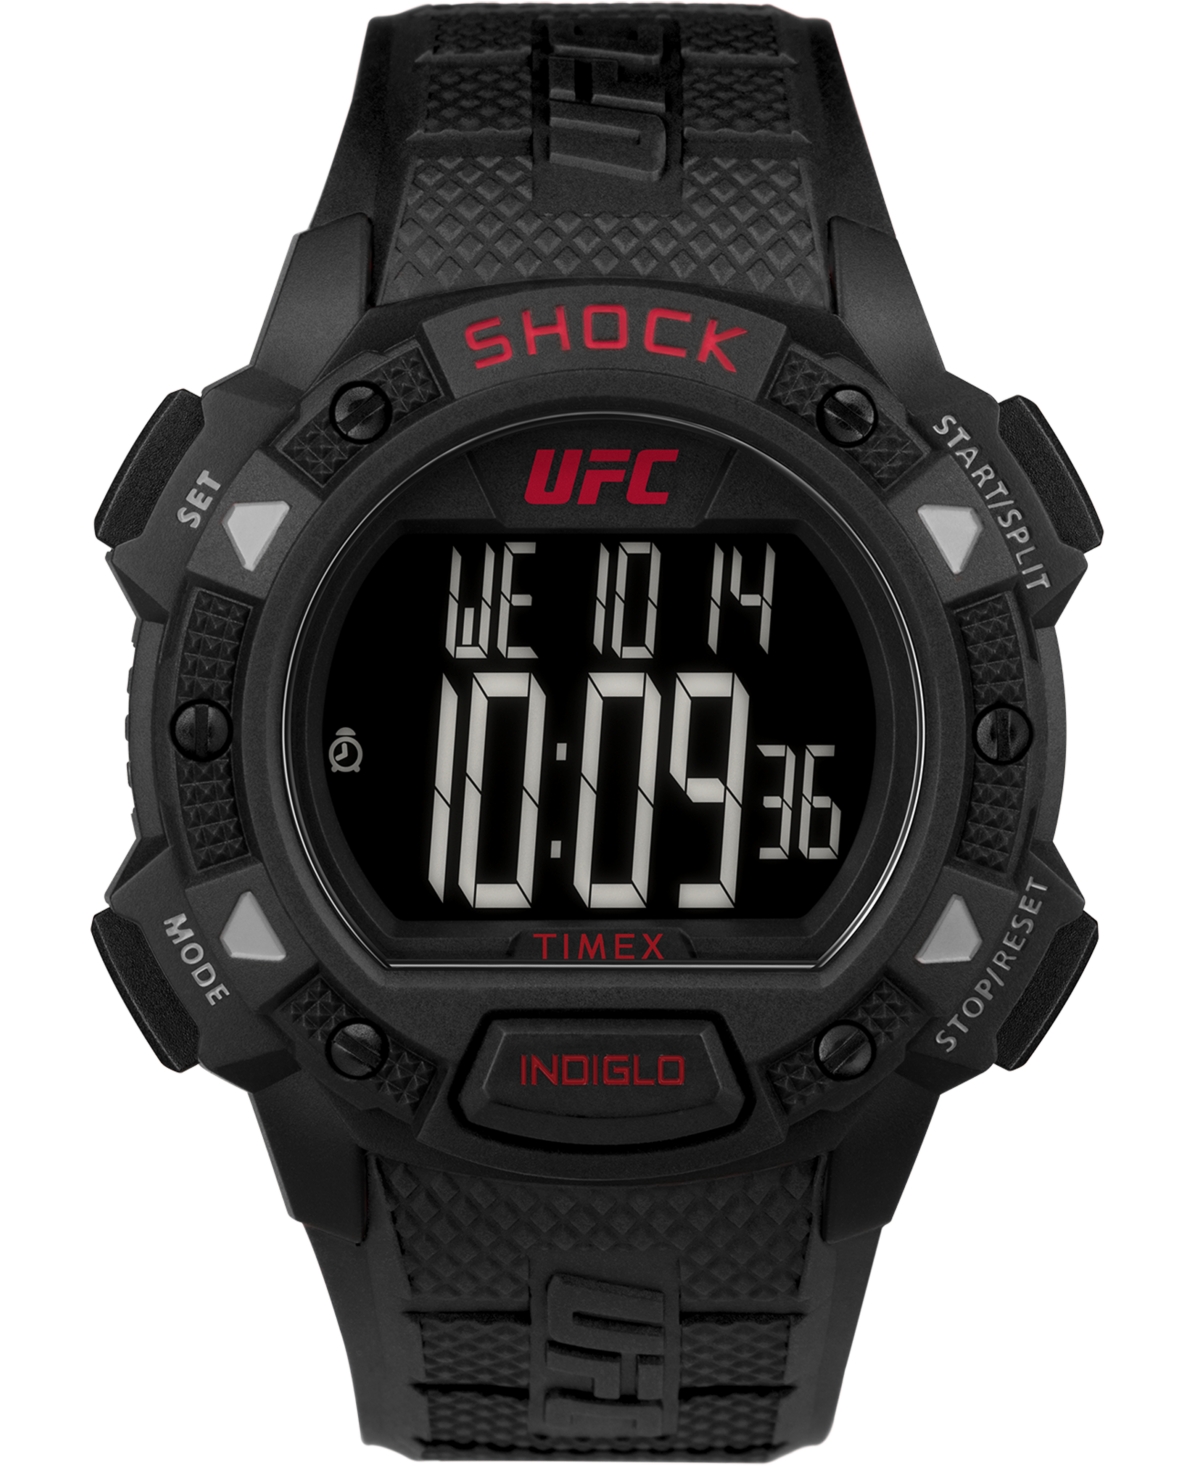 Ufc Men's Quartz Core Resin Black Shock Watch, 45mm - Black